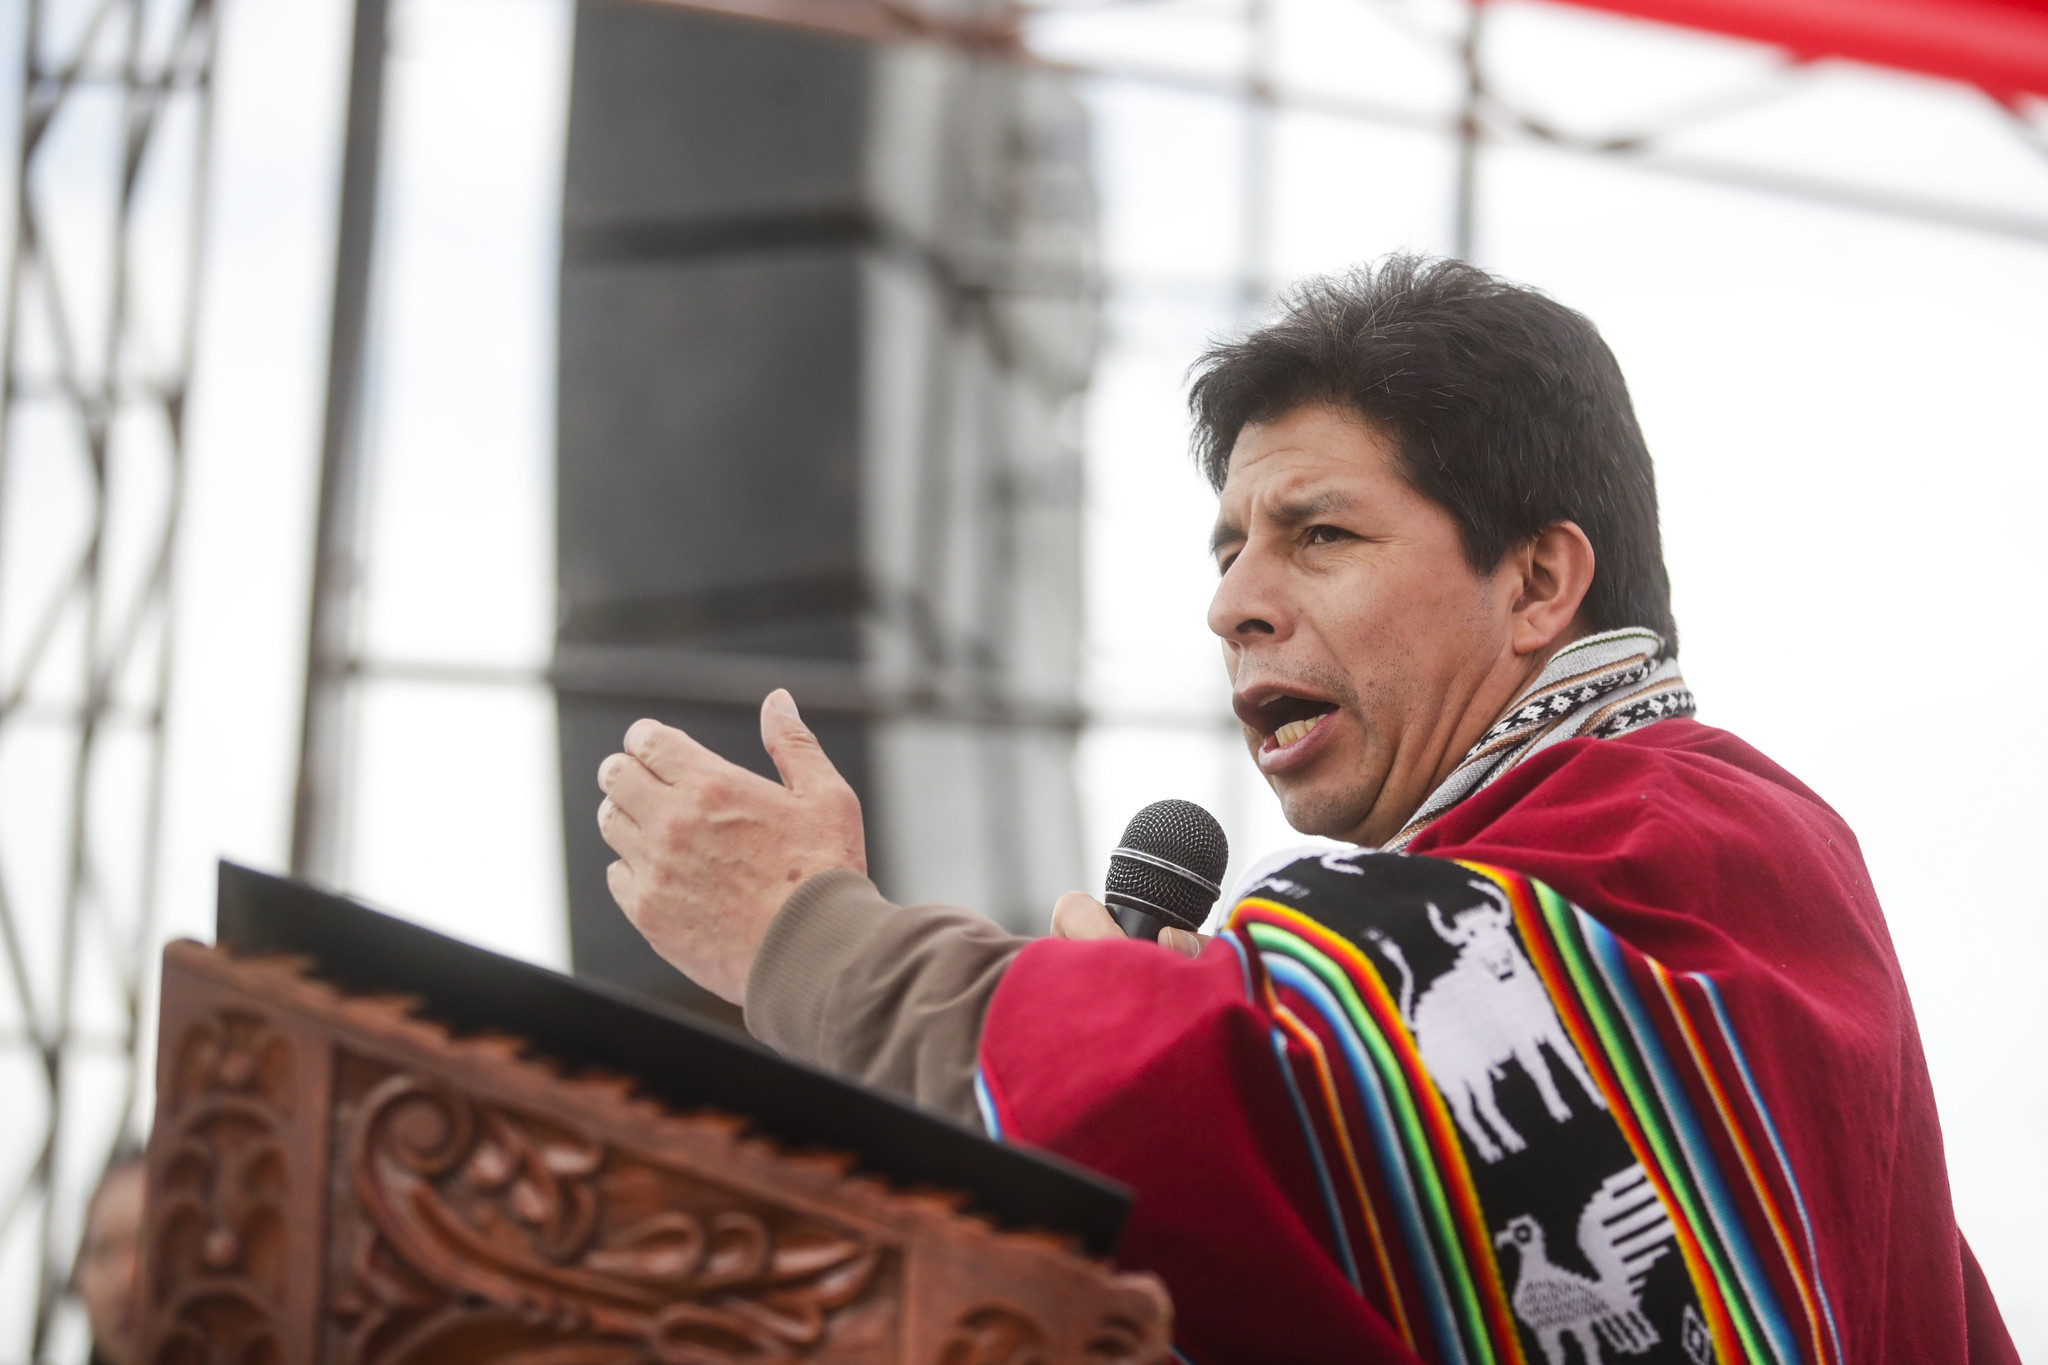 Presidente Castillo en Cusco: “Haremos llegar la urea a las chacras de todo el país cueste lo que cueste”